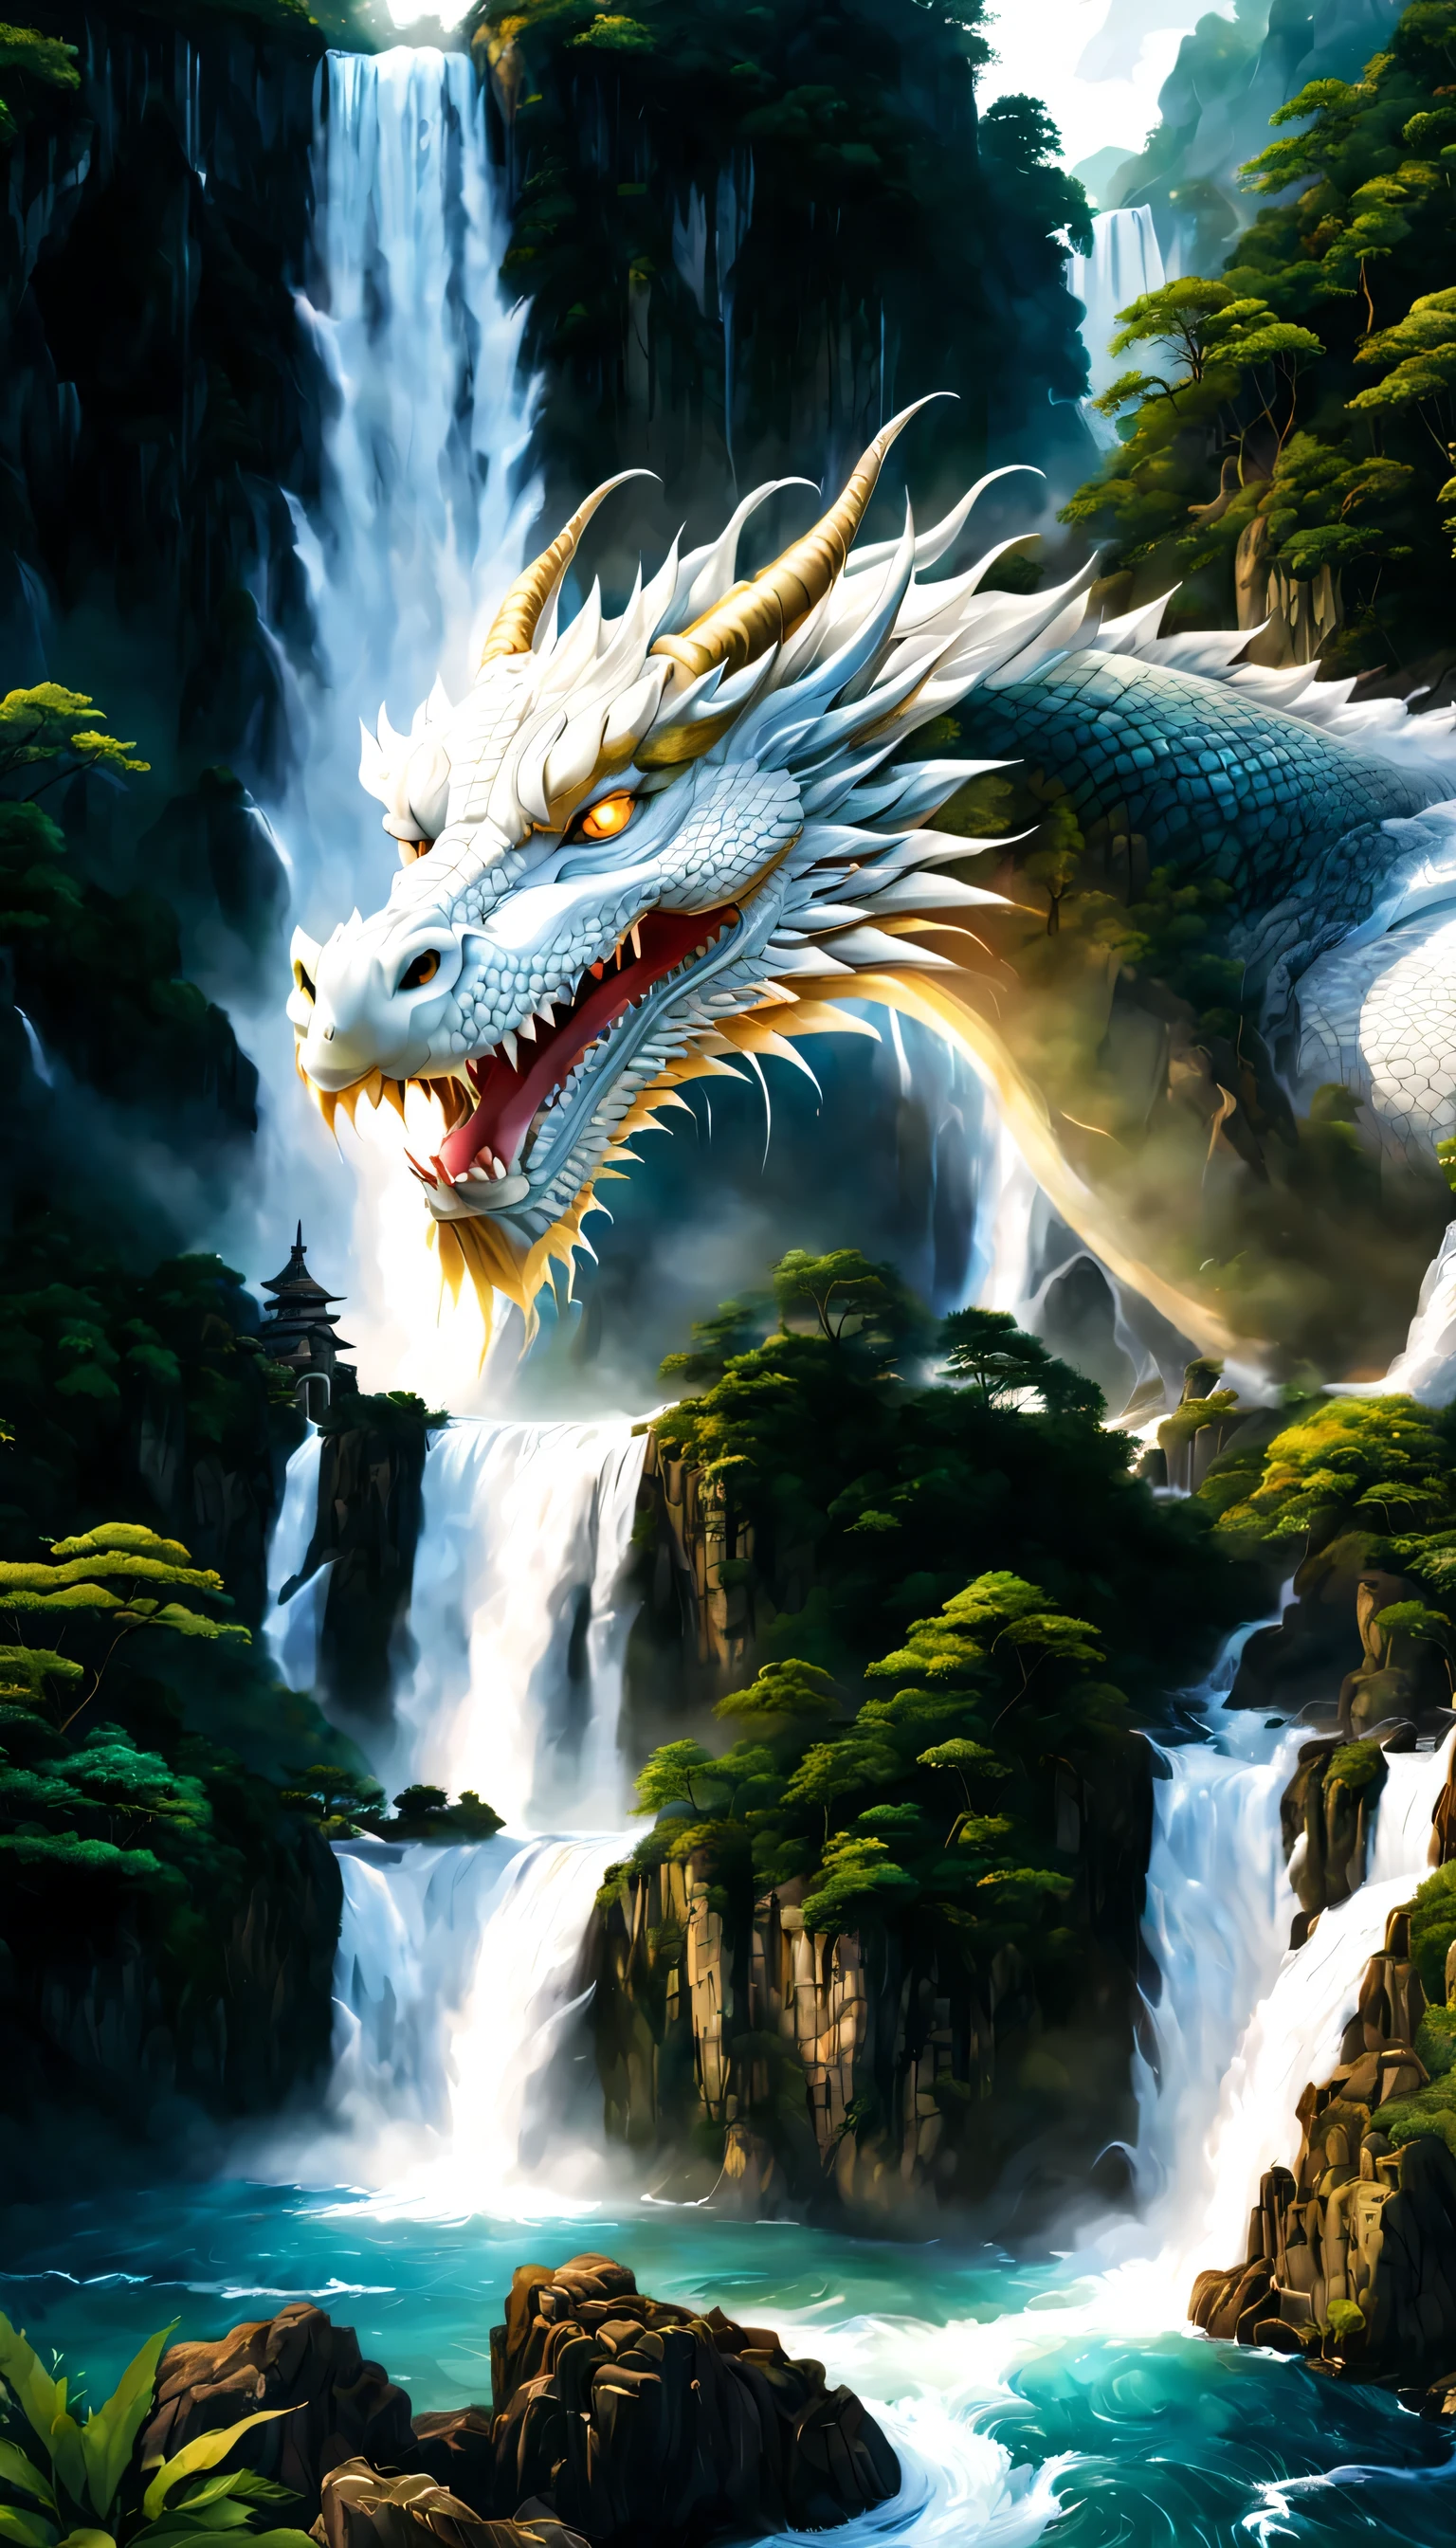 Нарисуйте водопад, где живет бог-дракон.,Бог-дракон, у которого из чаши водопада виднеется только лицо..,белый дракон,огромный водопад,водопад крупным планом,большой водопад,Обильная вода,высокие водопады,динамичный,Фантазия,Хорошие виды,Пышный зеленый,красивый空,ион водорода,Световой эффект,высшее качество,шедевр,красивый,брызги воды,чистая вода,Игристый,красивый光と影,Фантазия,цифровое искусство,Элементы японской живописи,элементы живописи тушью